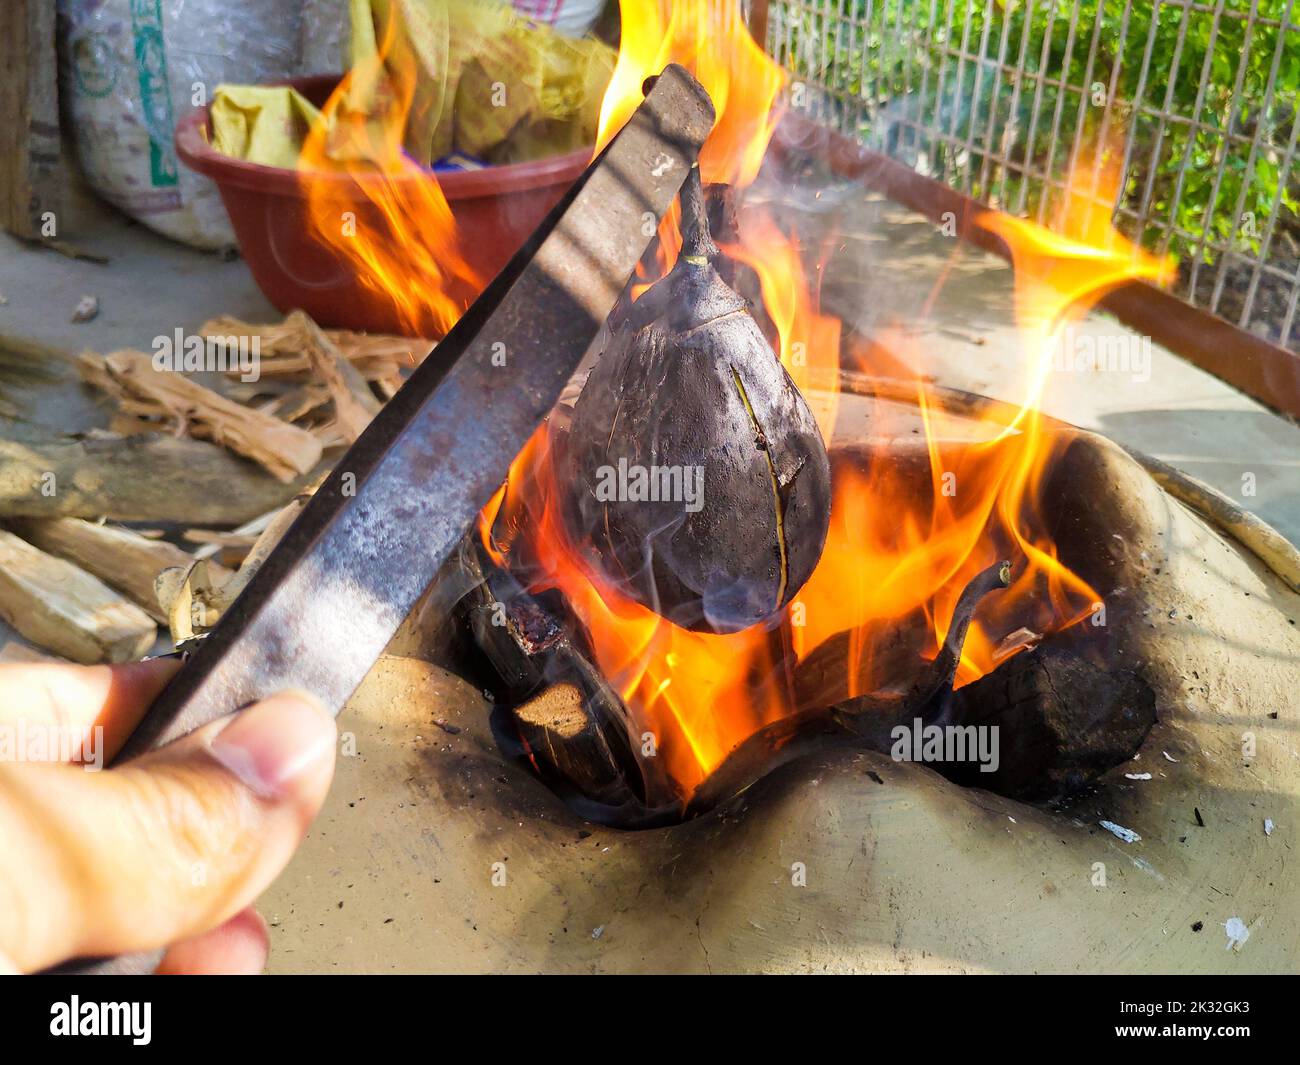 Roasting eggplant using iron tweezers on a traditional firewood stove. Uttarakhand India Stock Photo